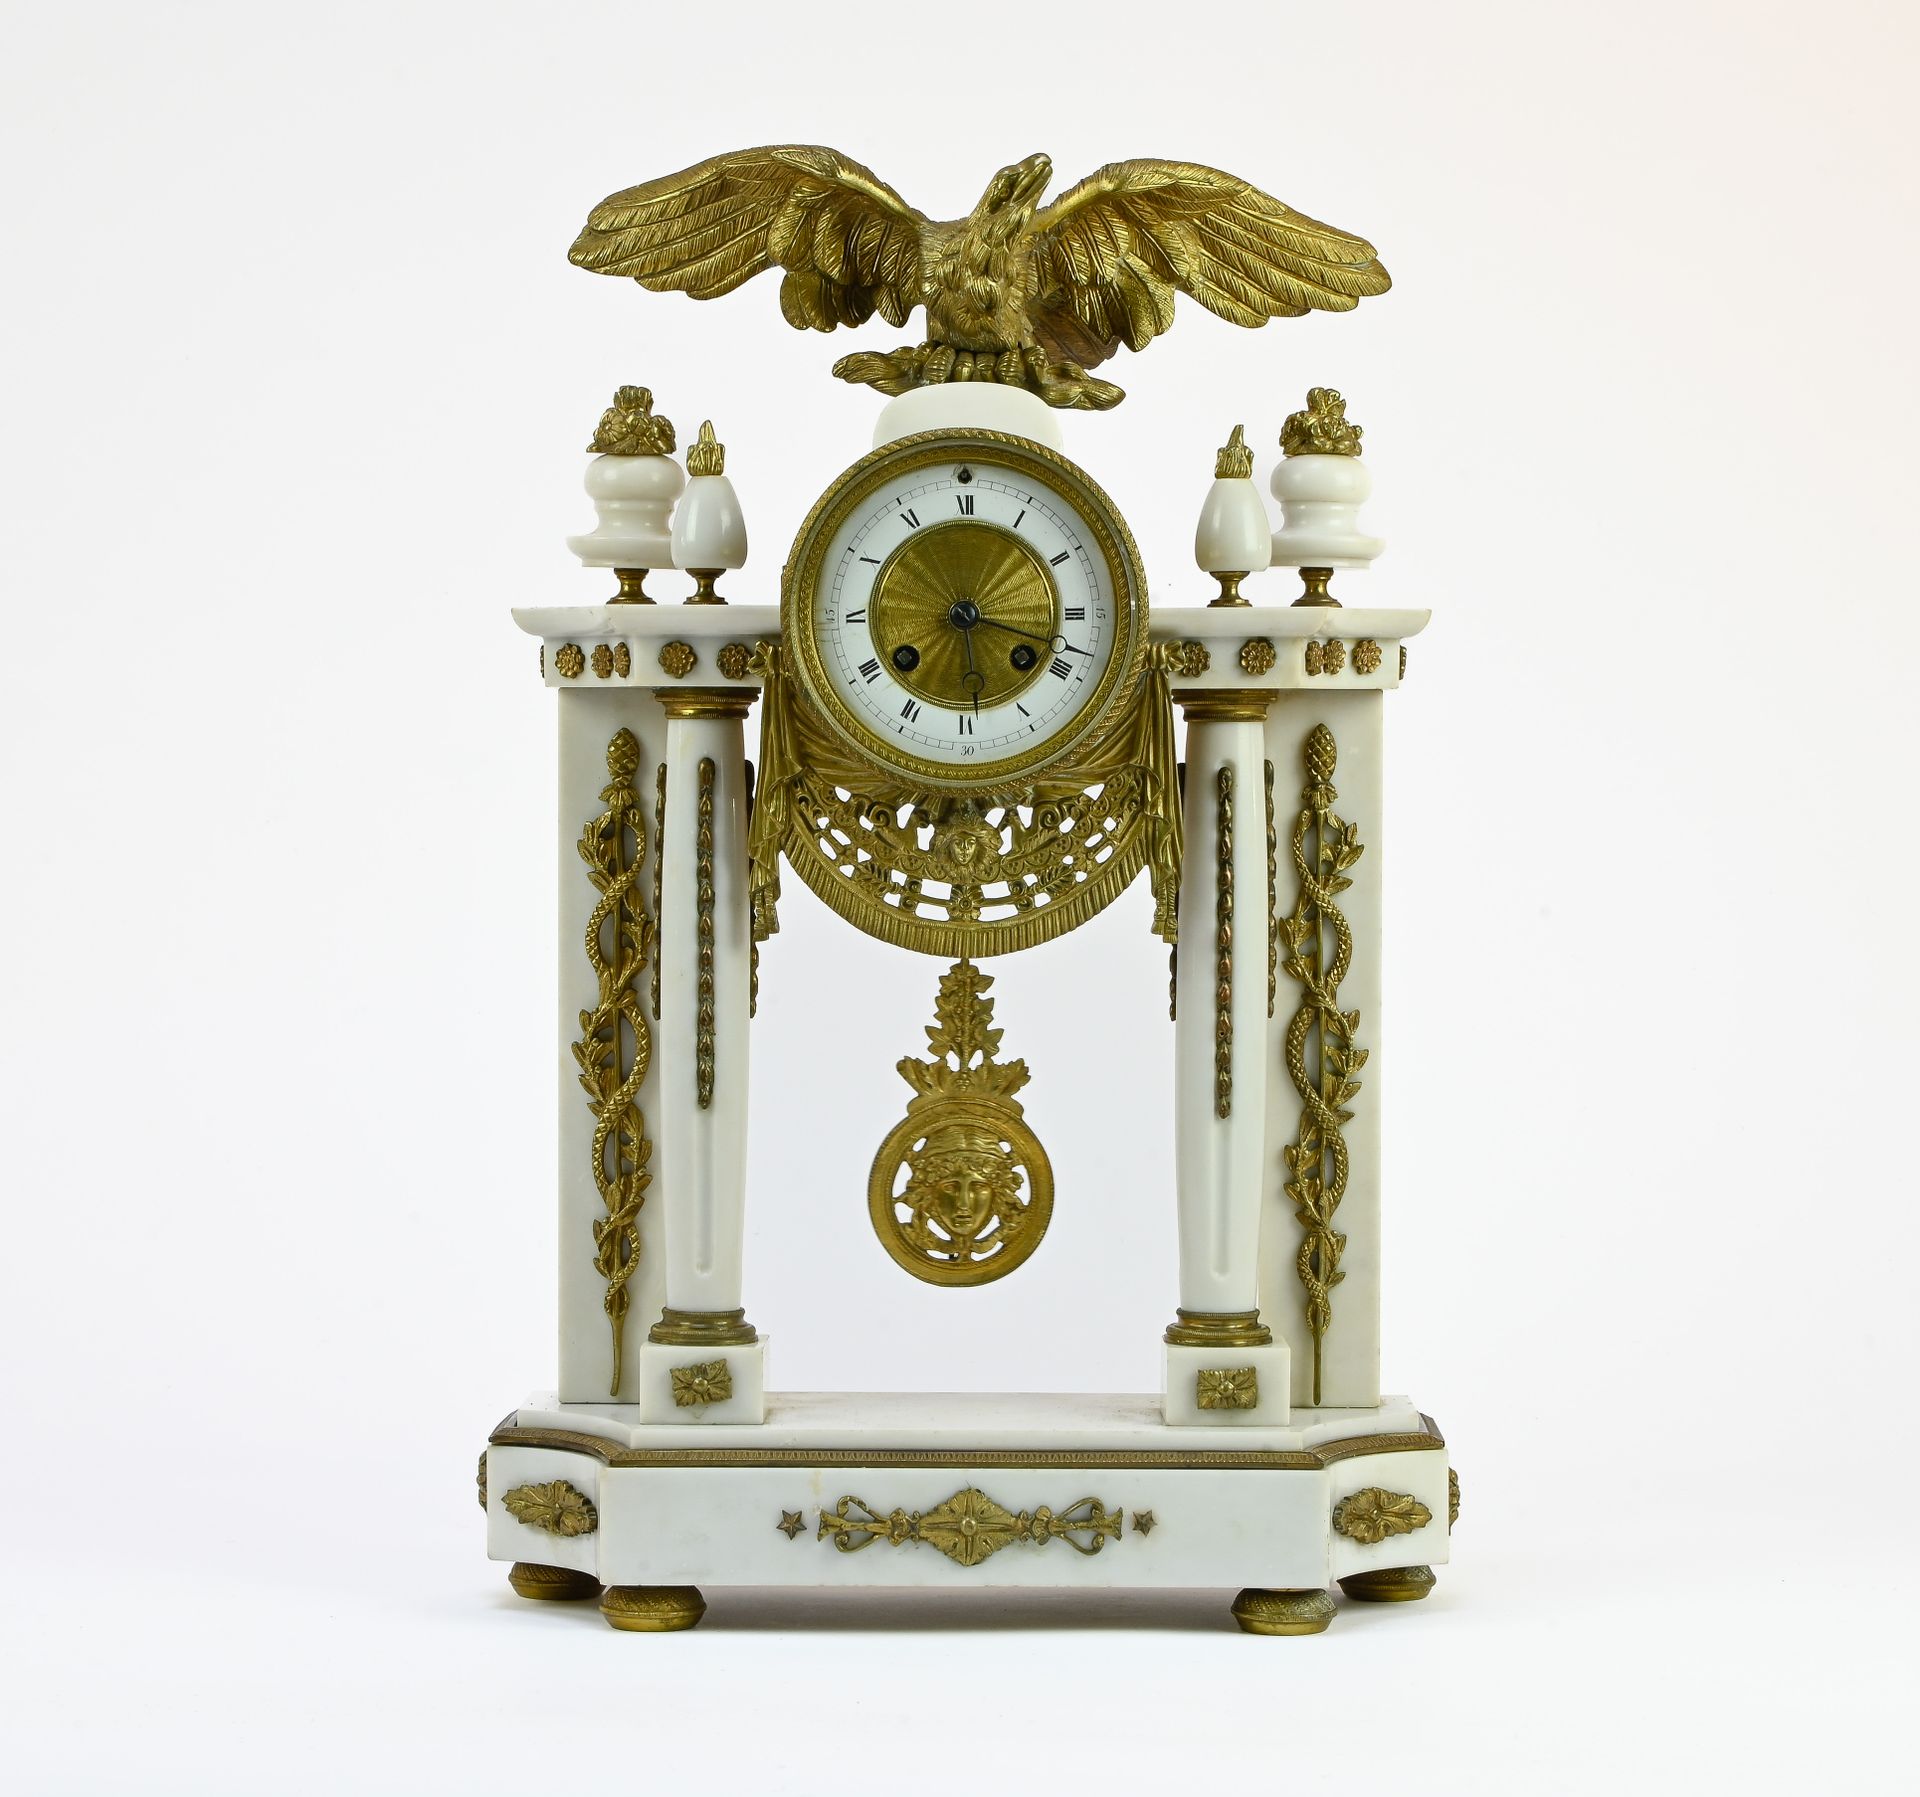 Pendule portique à l'aigle PERIODO DE LUIS XIV

Reloj de pórtico con águila



e&hellip;